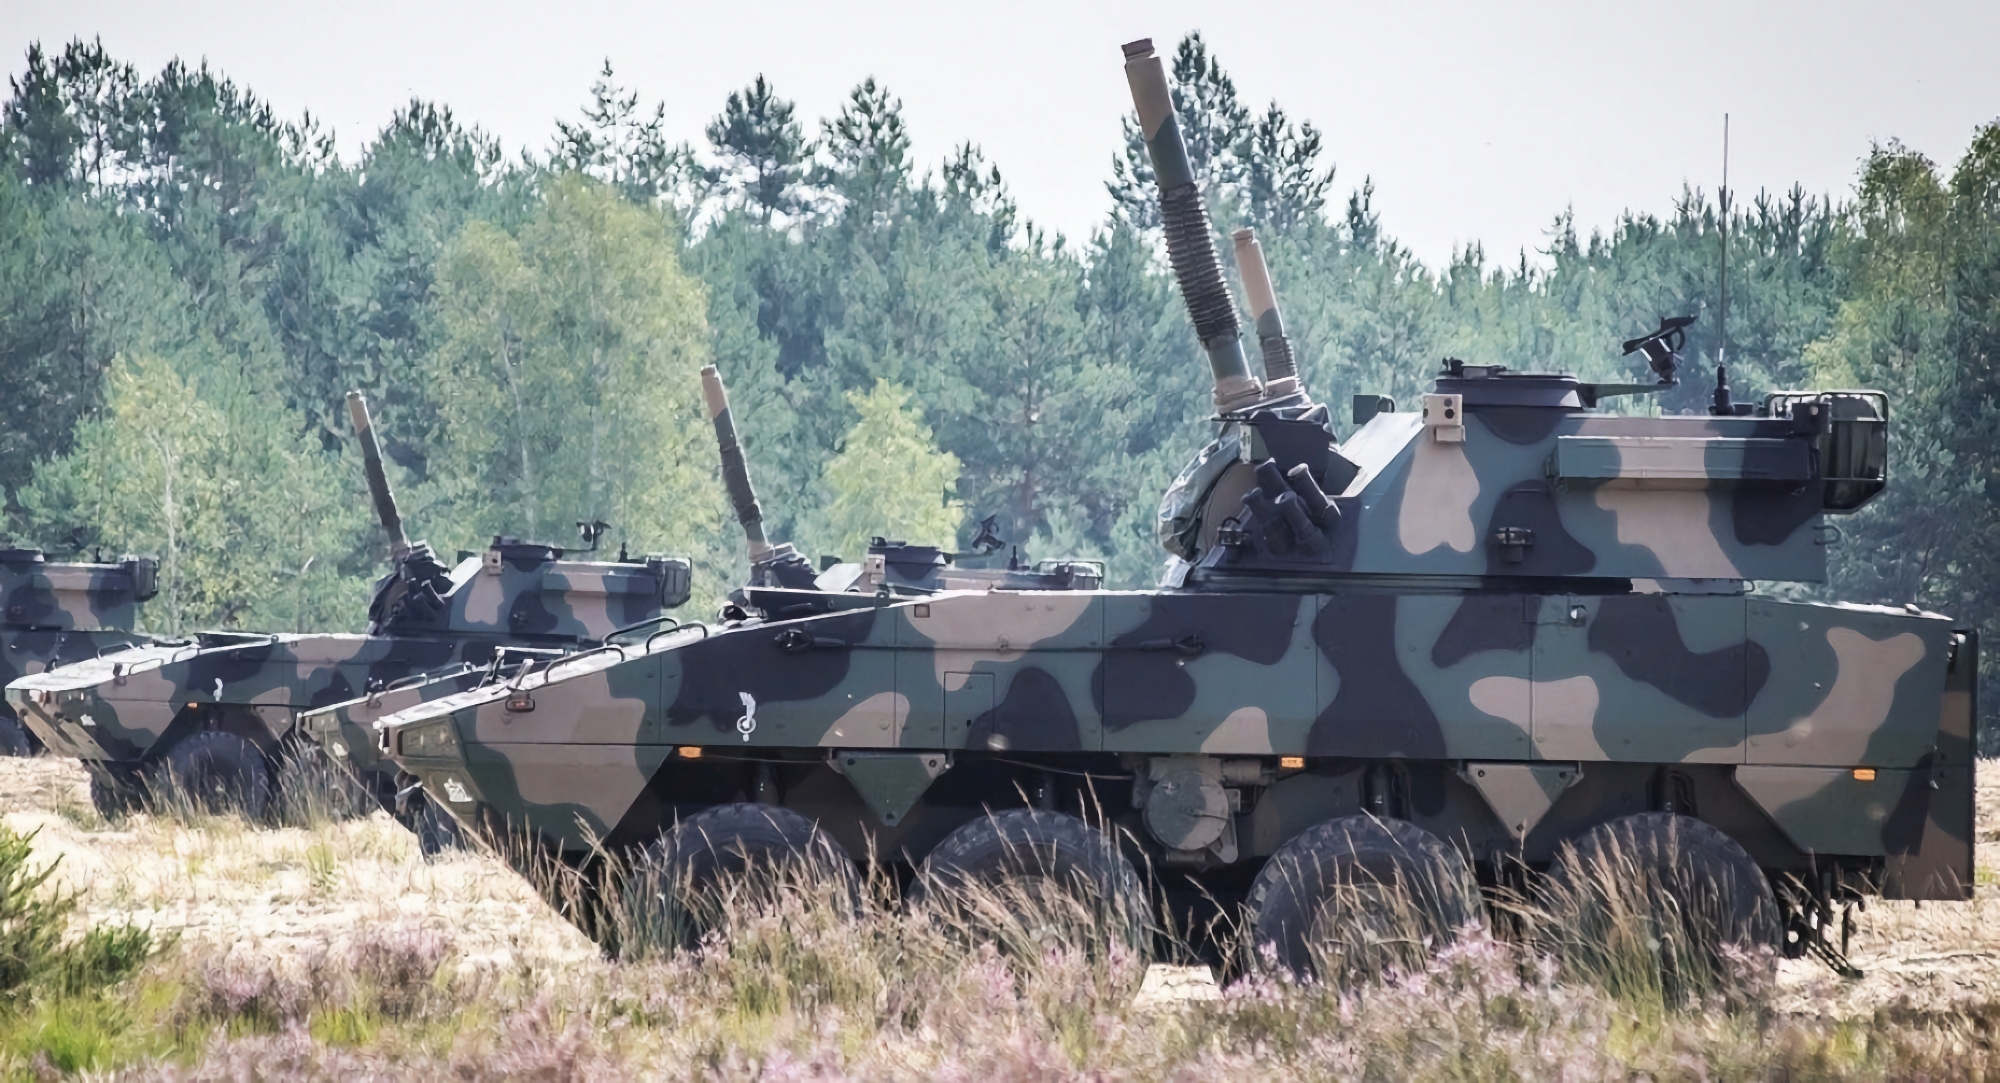 Wojsko Polskie otrzymało nową partię samobieżnych moździerzy Rak kalibru 120 mm o zasięgu rażenia do 12 km